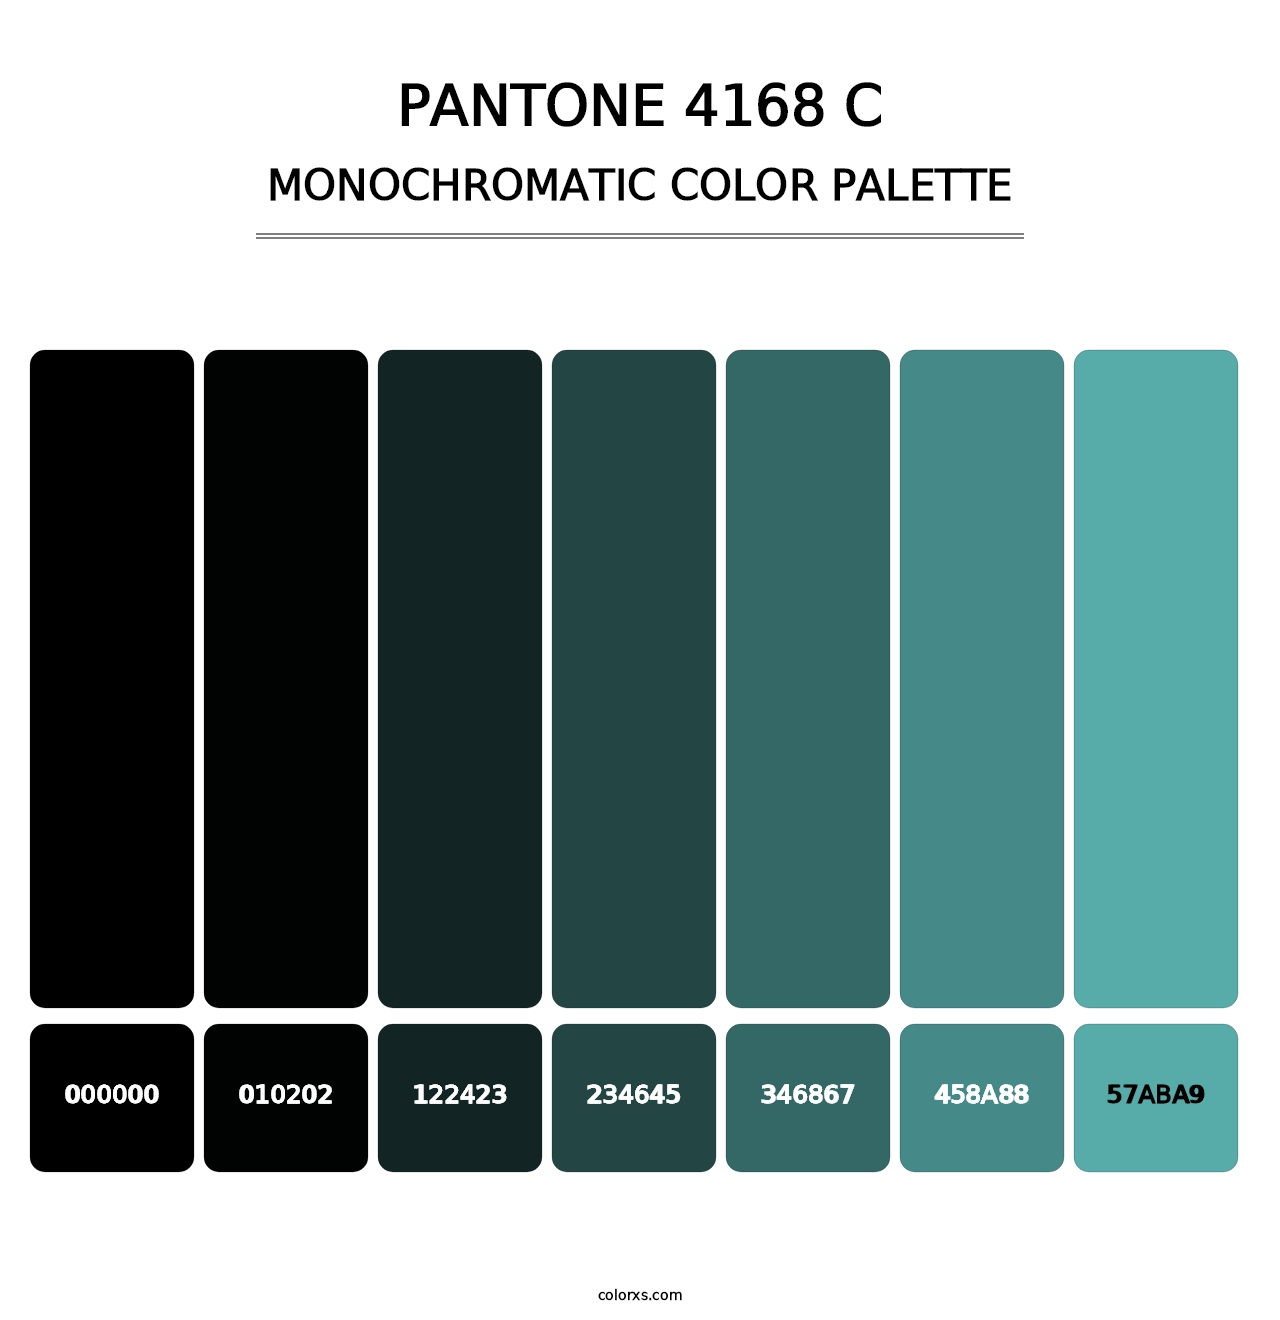 PANTONE 4168 C - Monochromatic Color Palette